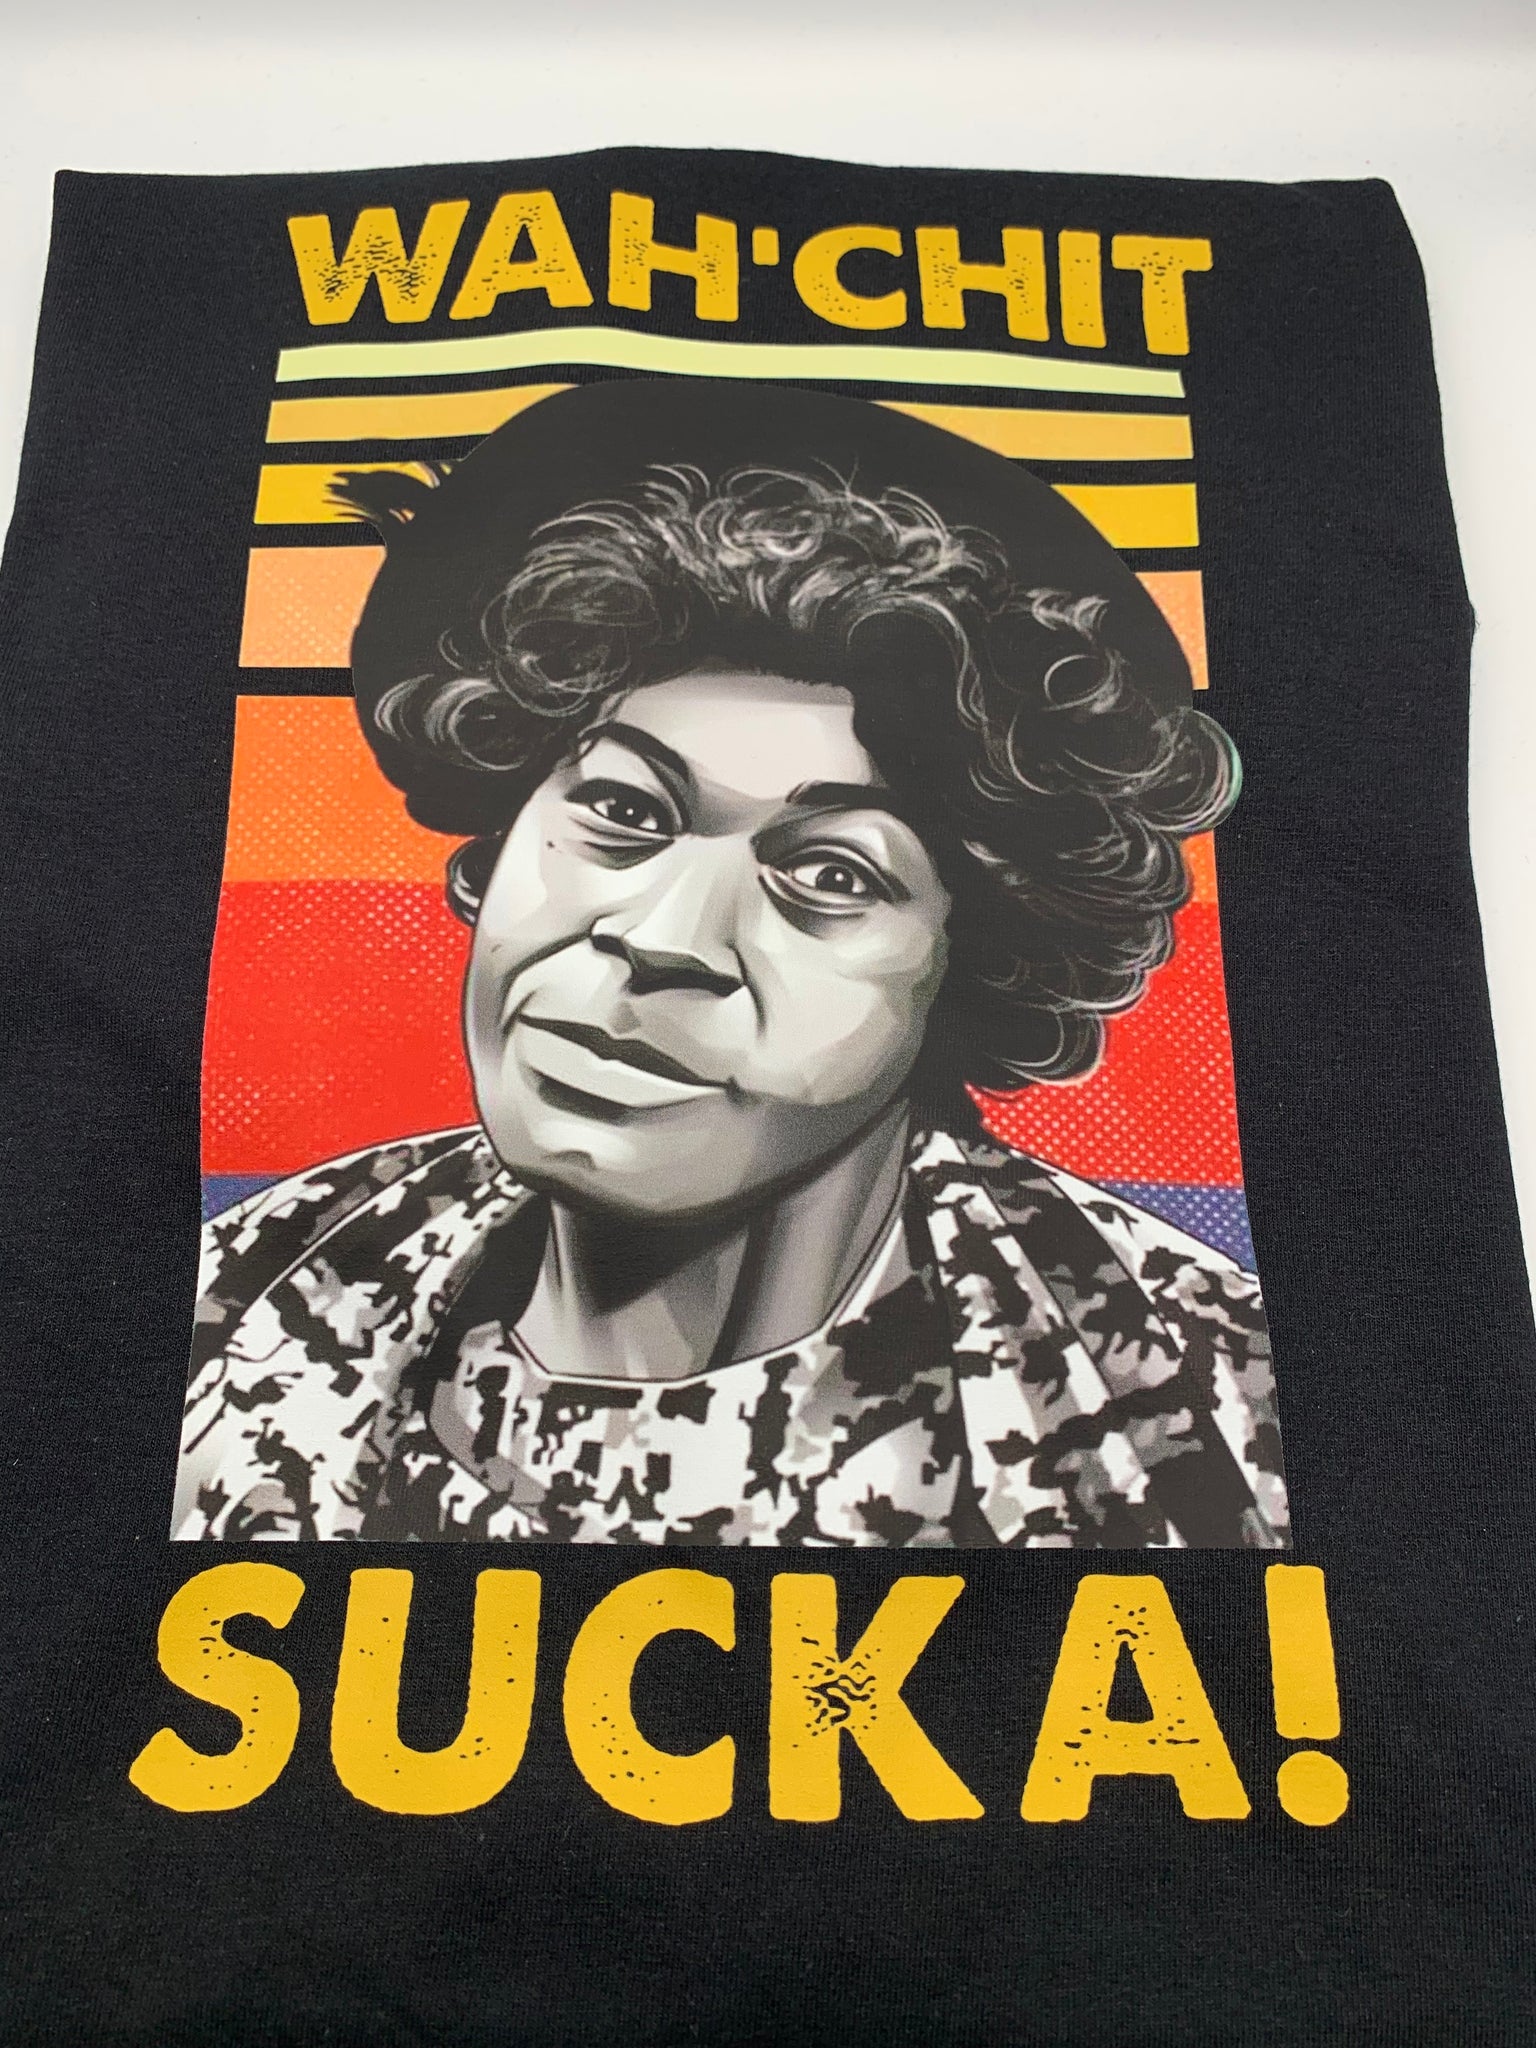 Wah’chit Sucka Shirt